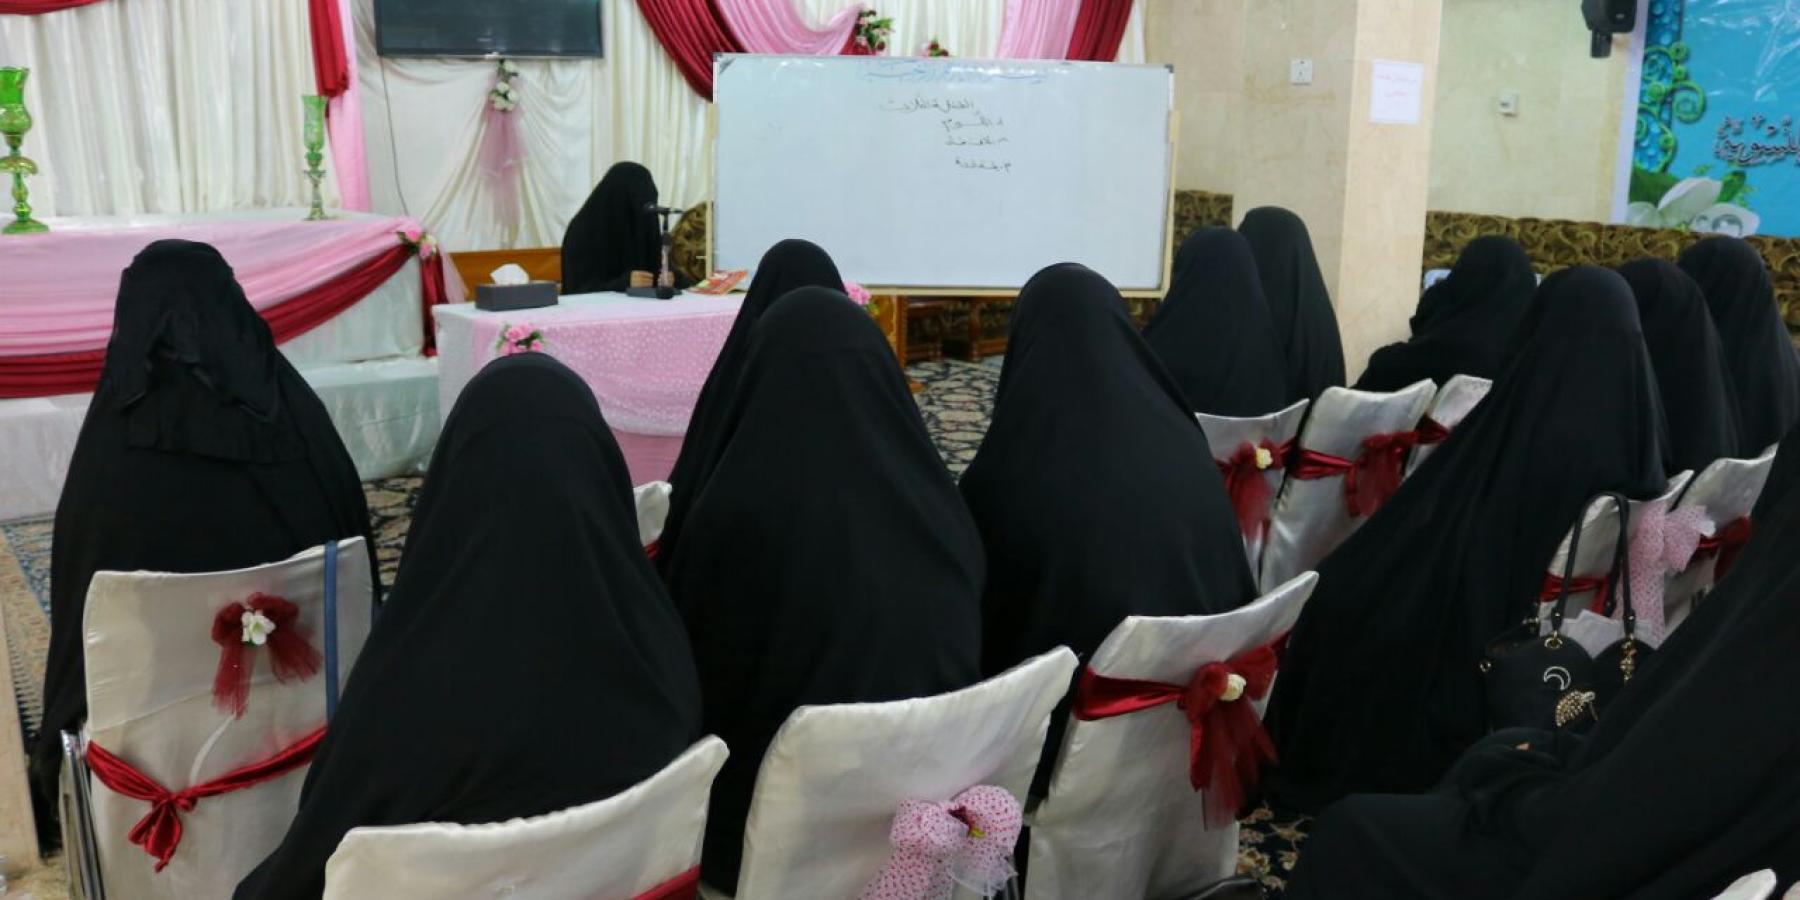  شعبة التعليم الديني النسوي في العتبة العلوية تقيم دورة في فنون التعامل مع الاخرين لمنتسبات العتبة العلوية